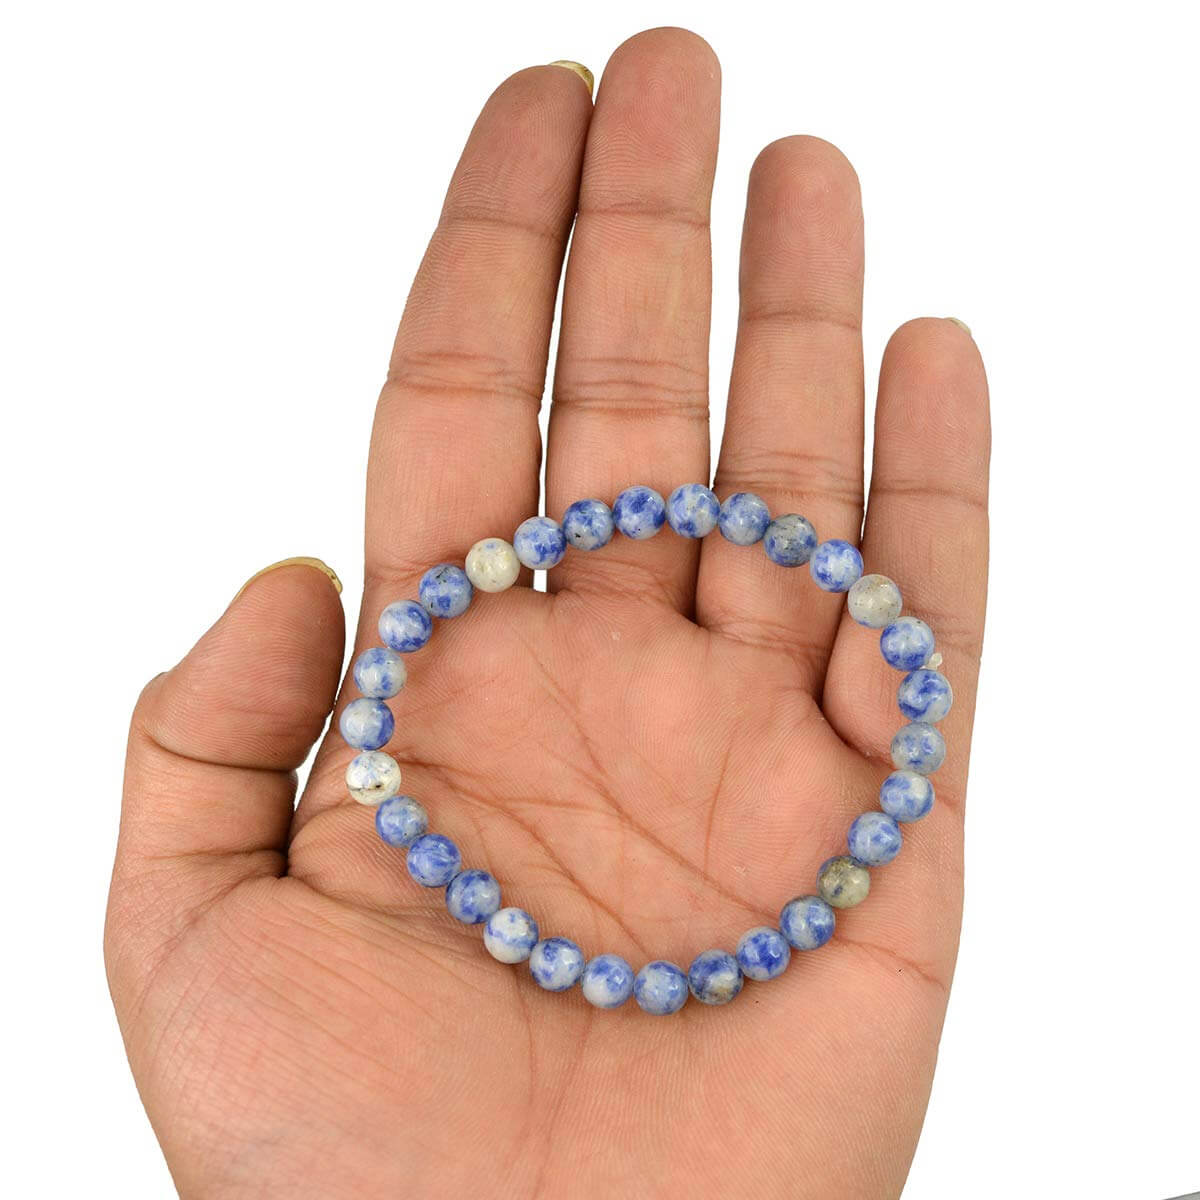 Sodalite Crystal Bracelet for Reiki Healing 6 MM